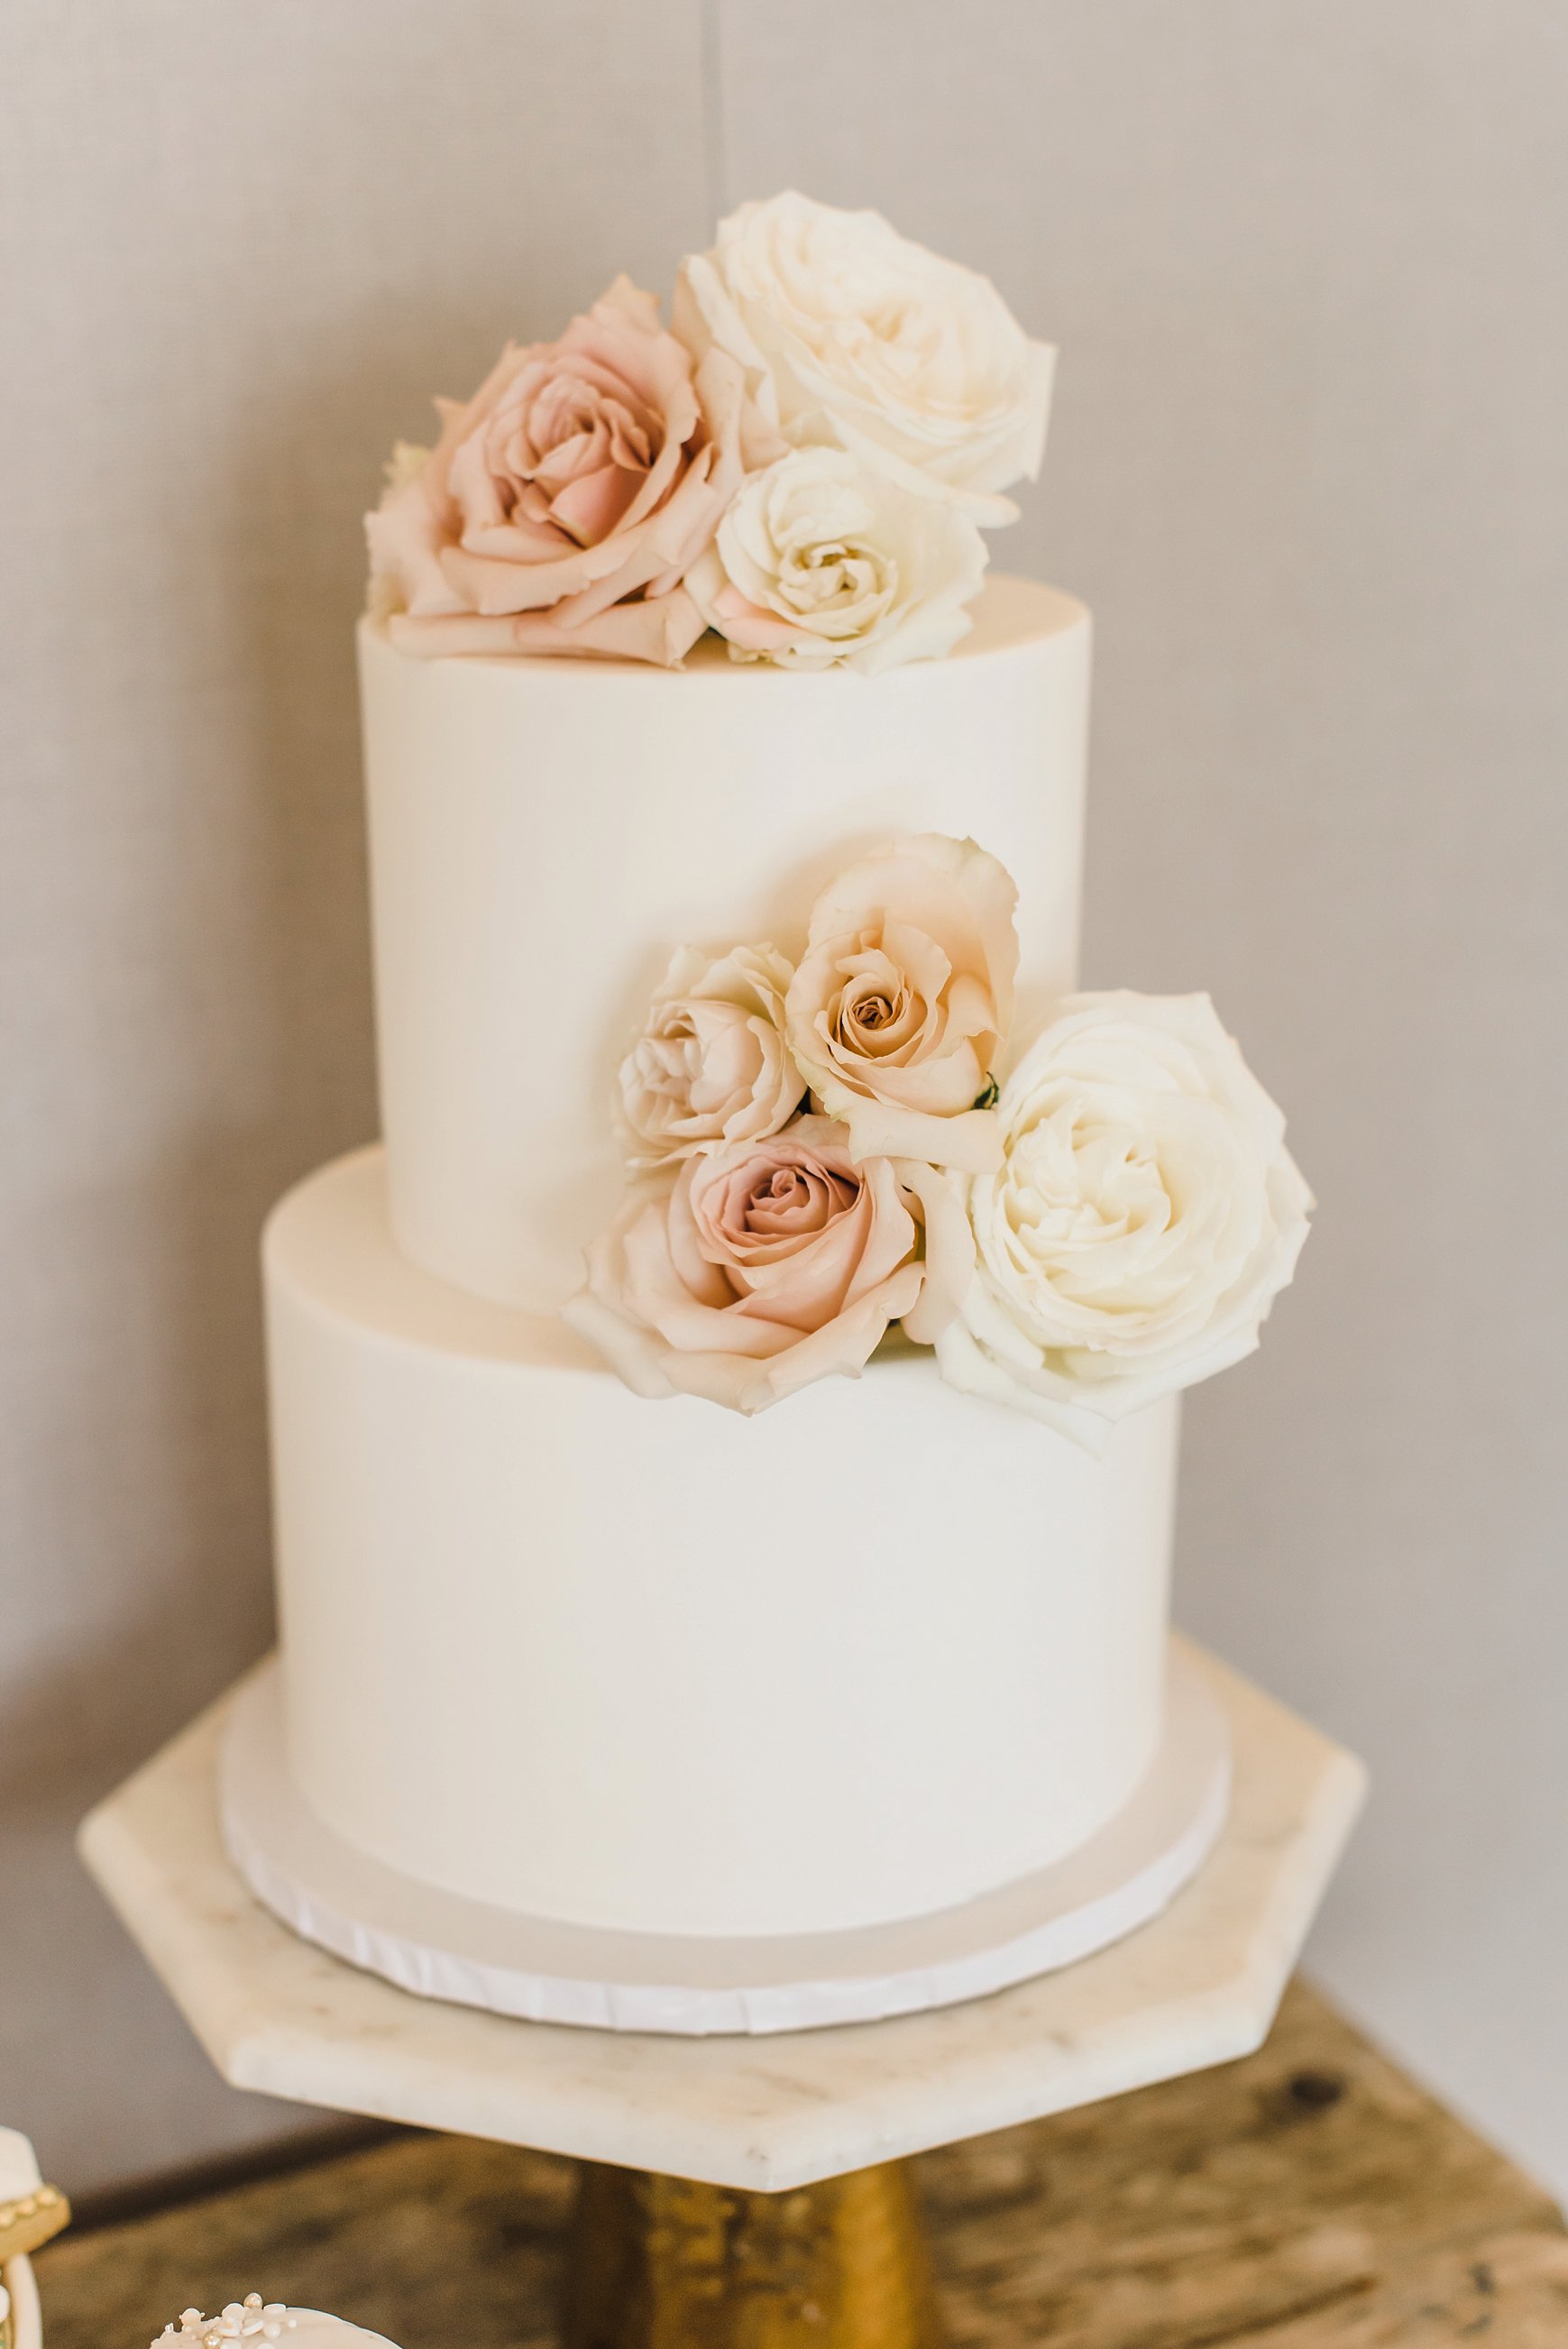  Batter Up Bakery’s gorgeous, minimalist multi-layered cake!  